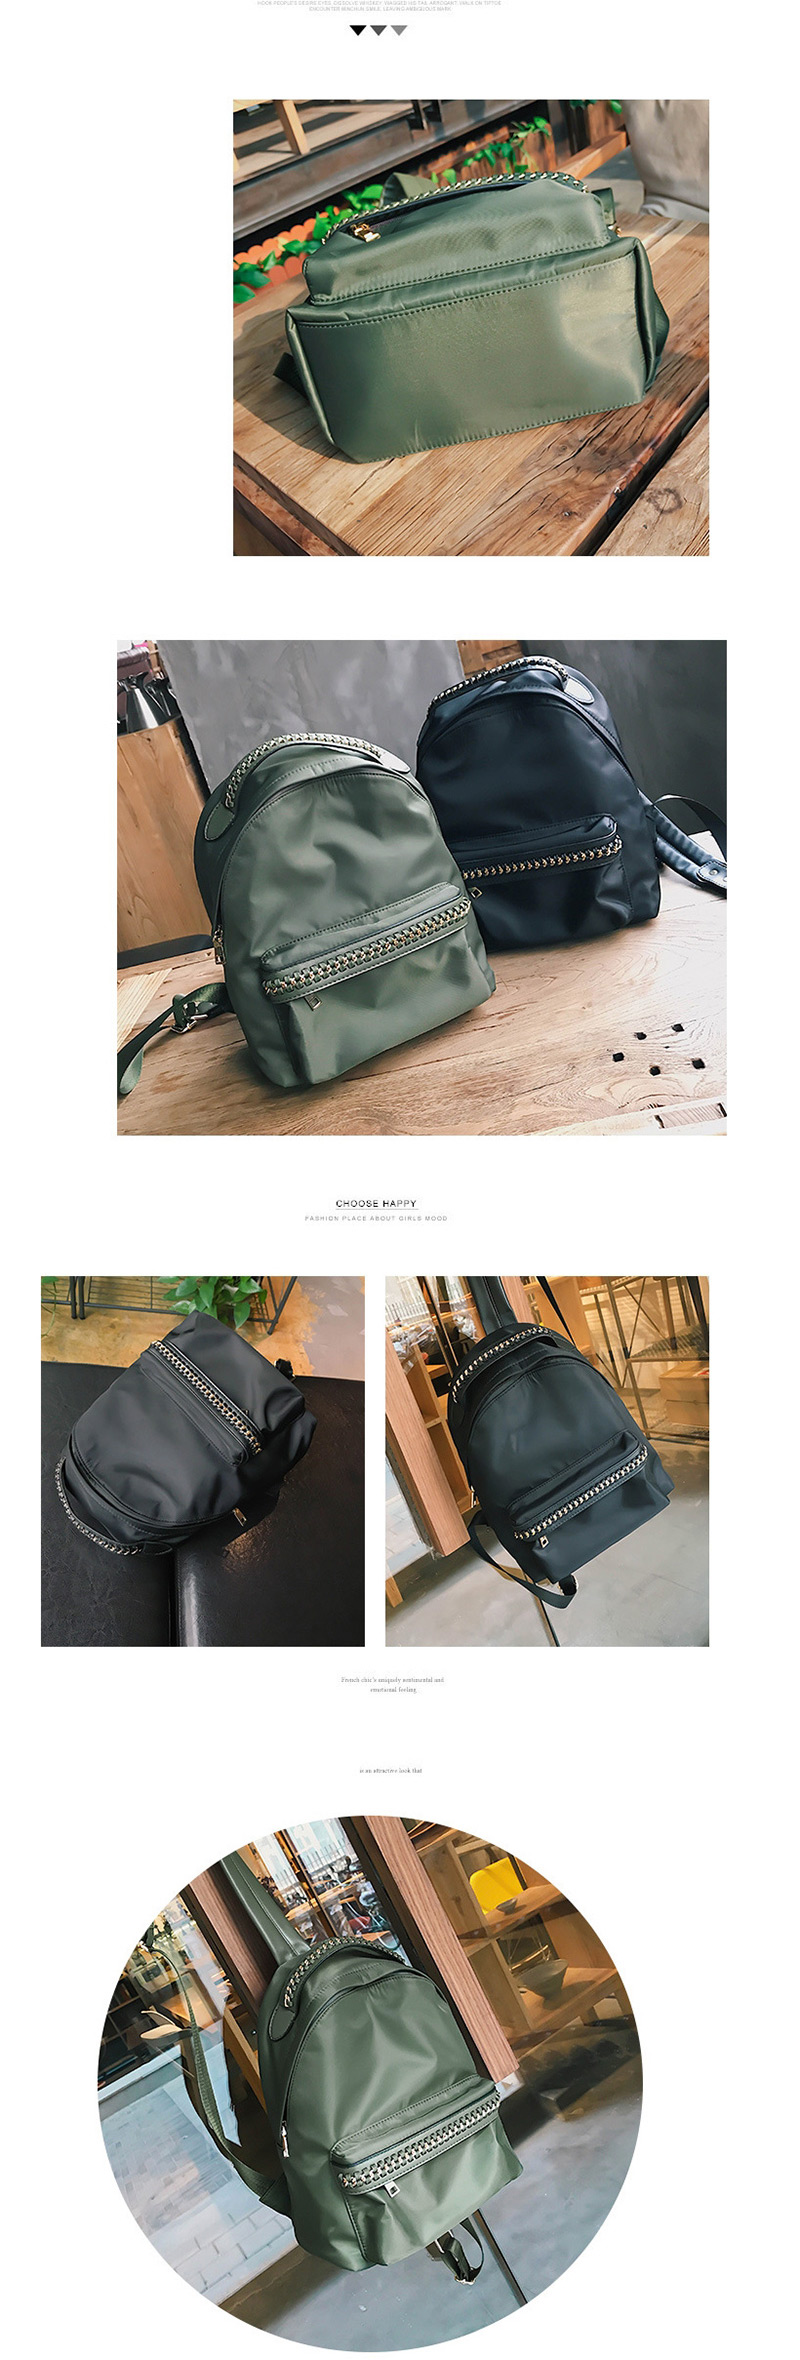 Fashion Black Chain Backpack,Backpack